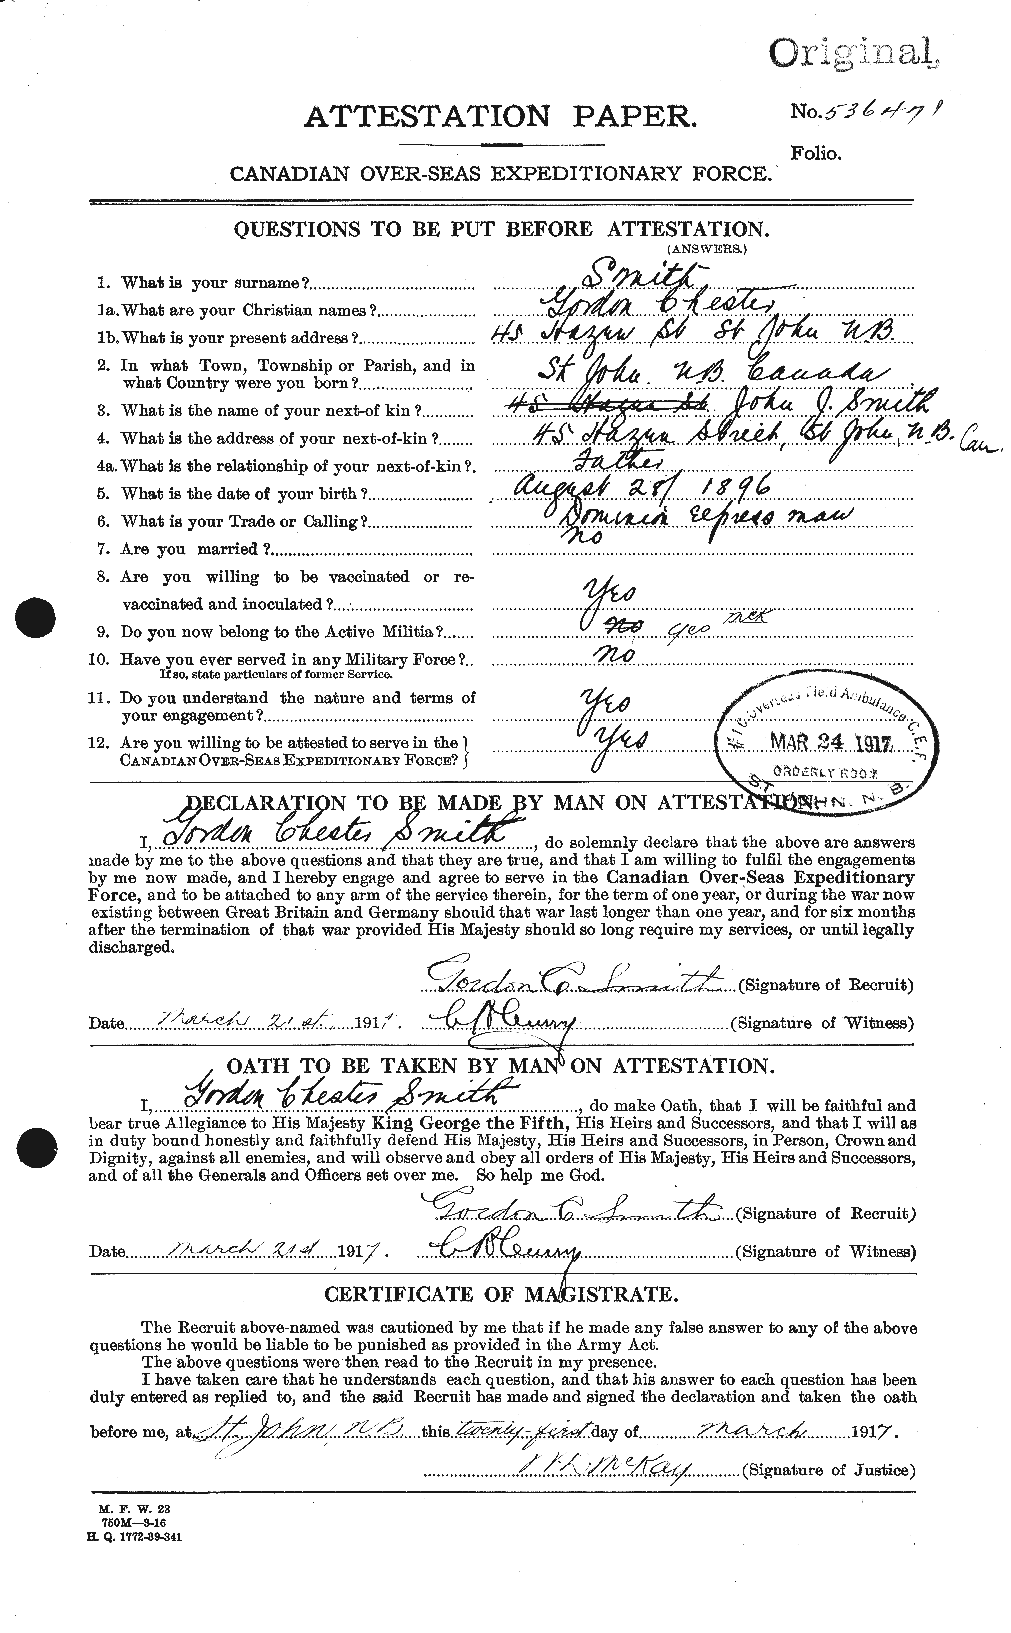 Dossiers du Personnel de la Première Guerre mondiale - CEC 101480a